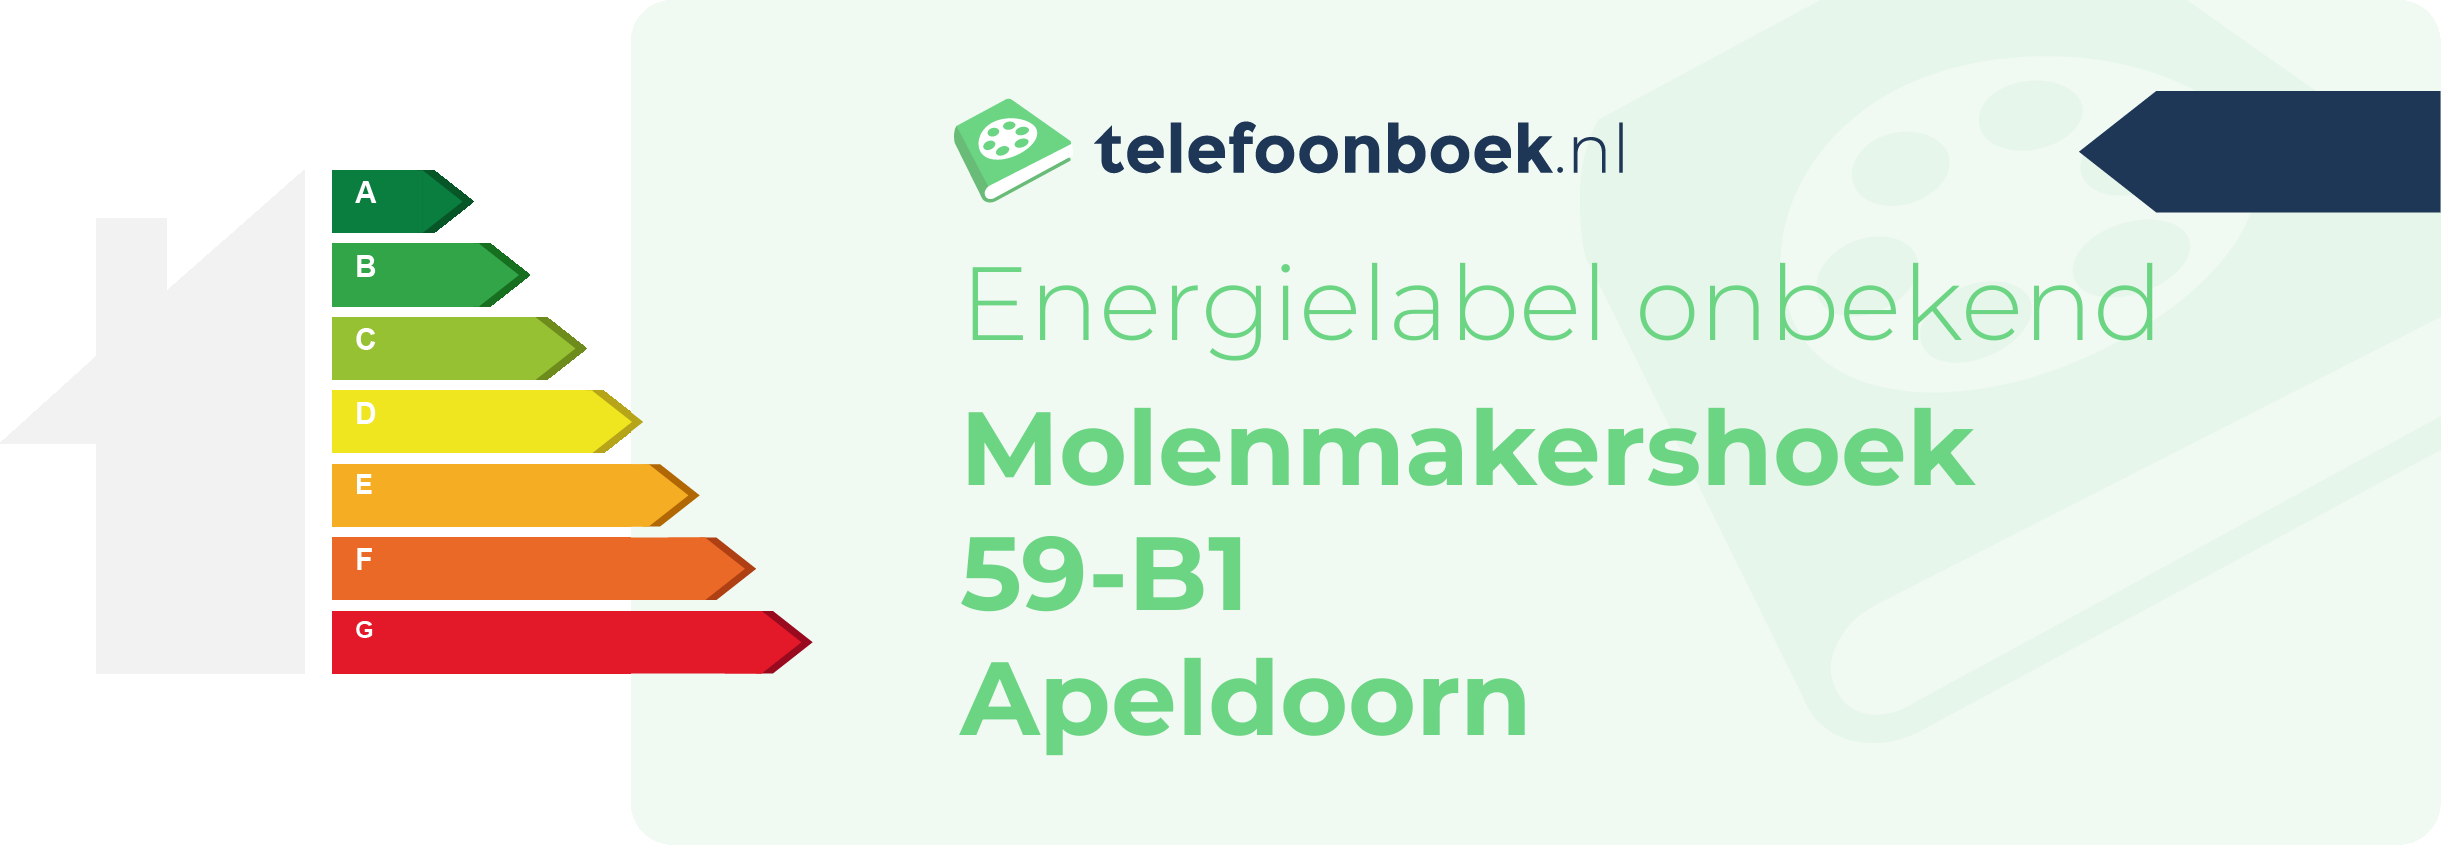 Energielabel Molenmakershoek 59-B1 Apeldoorn